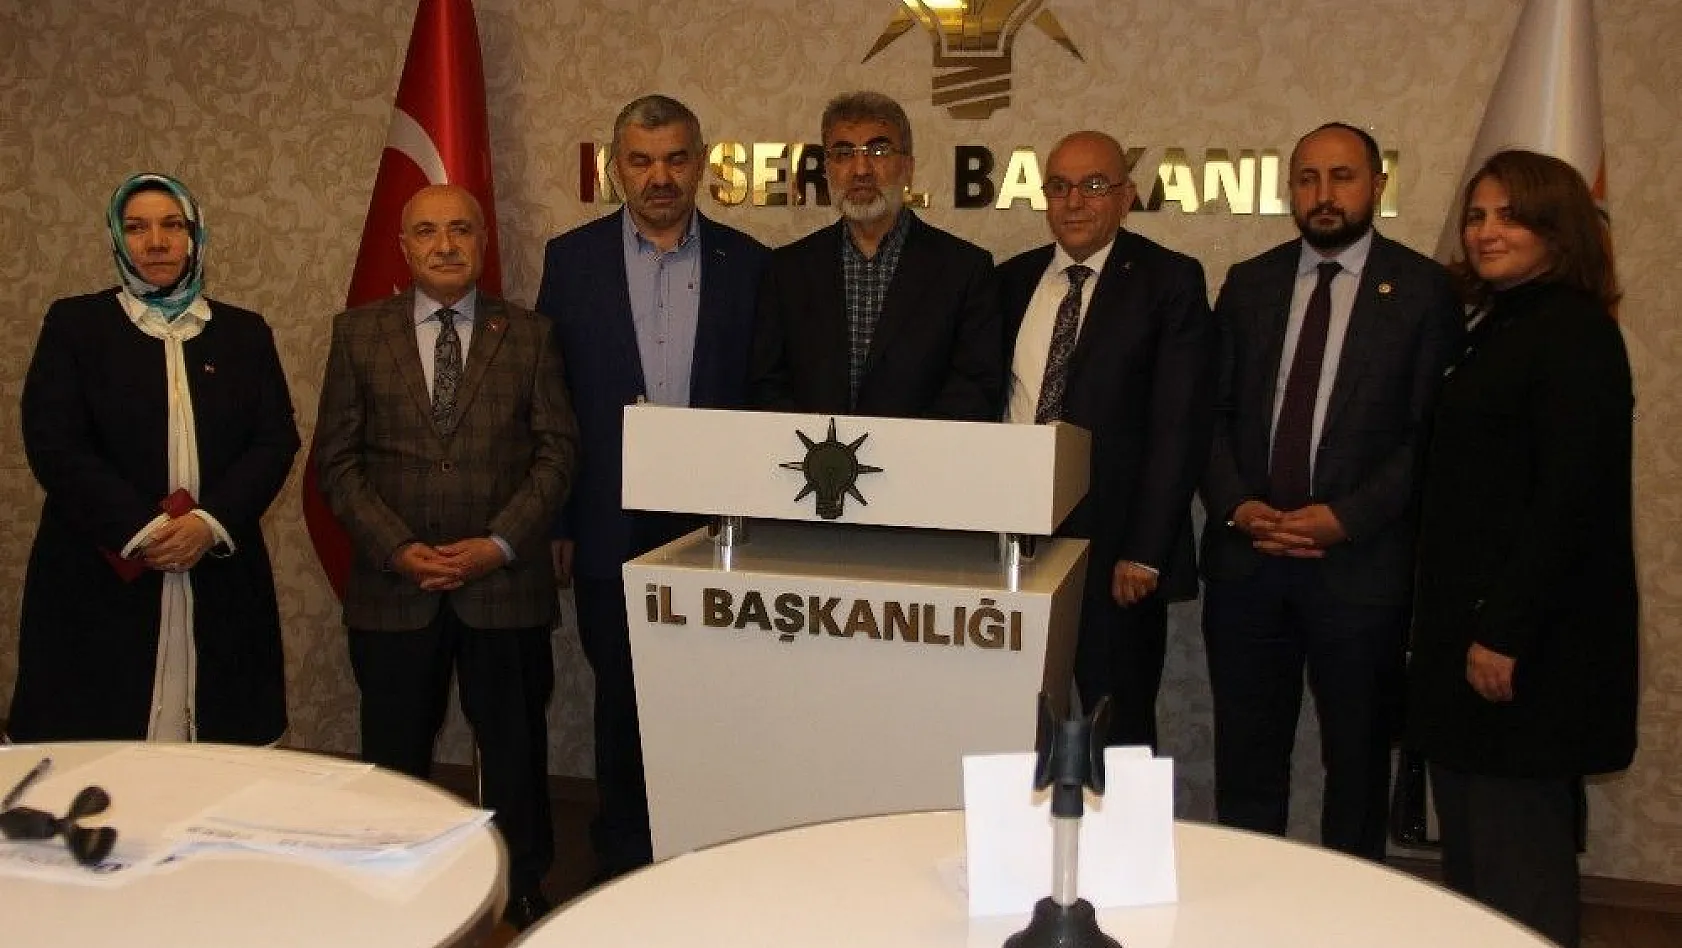 AK Parti Kayseri Milletvekili Taner Yıldız:  